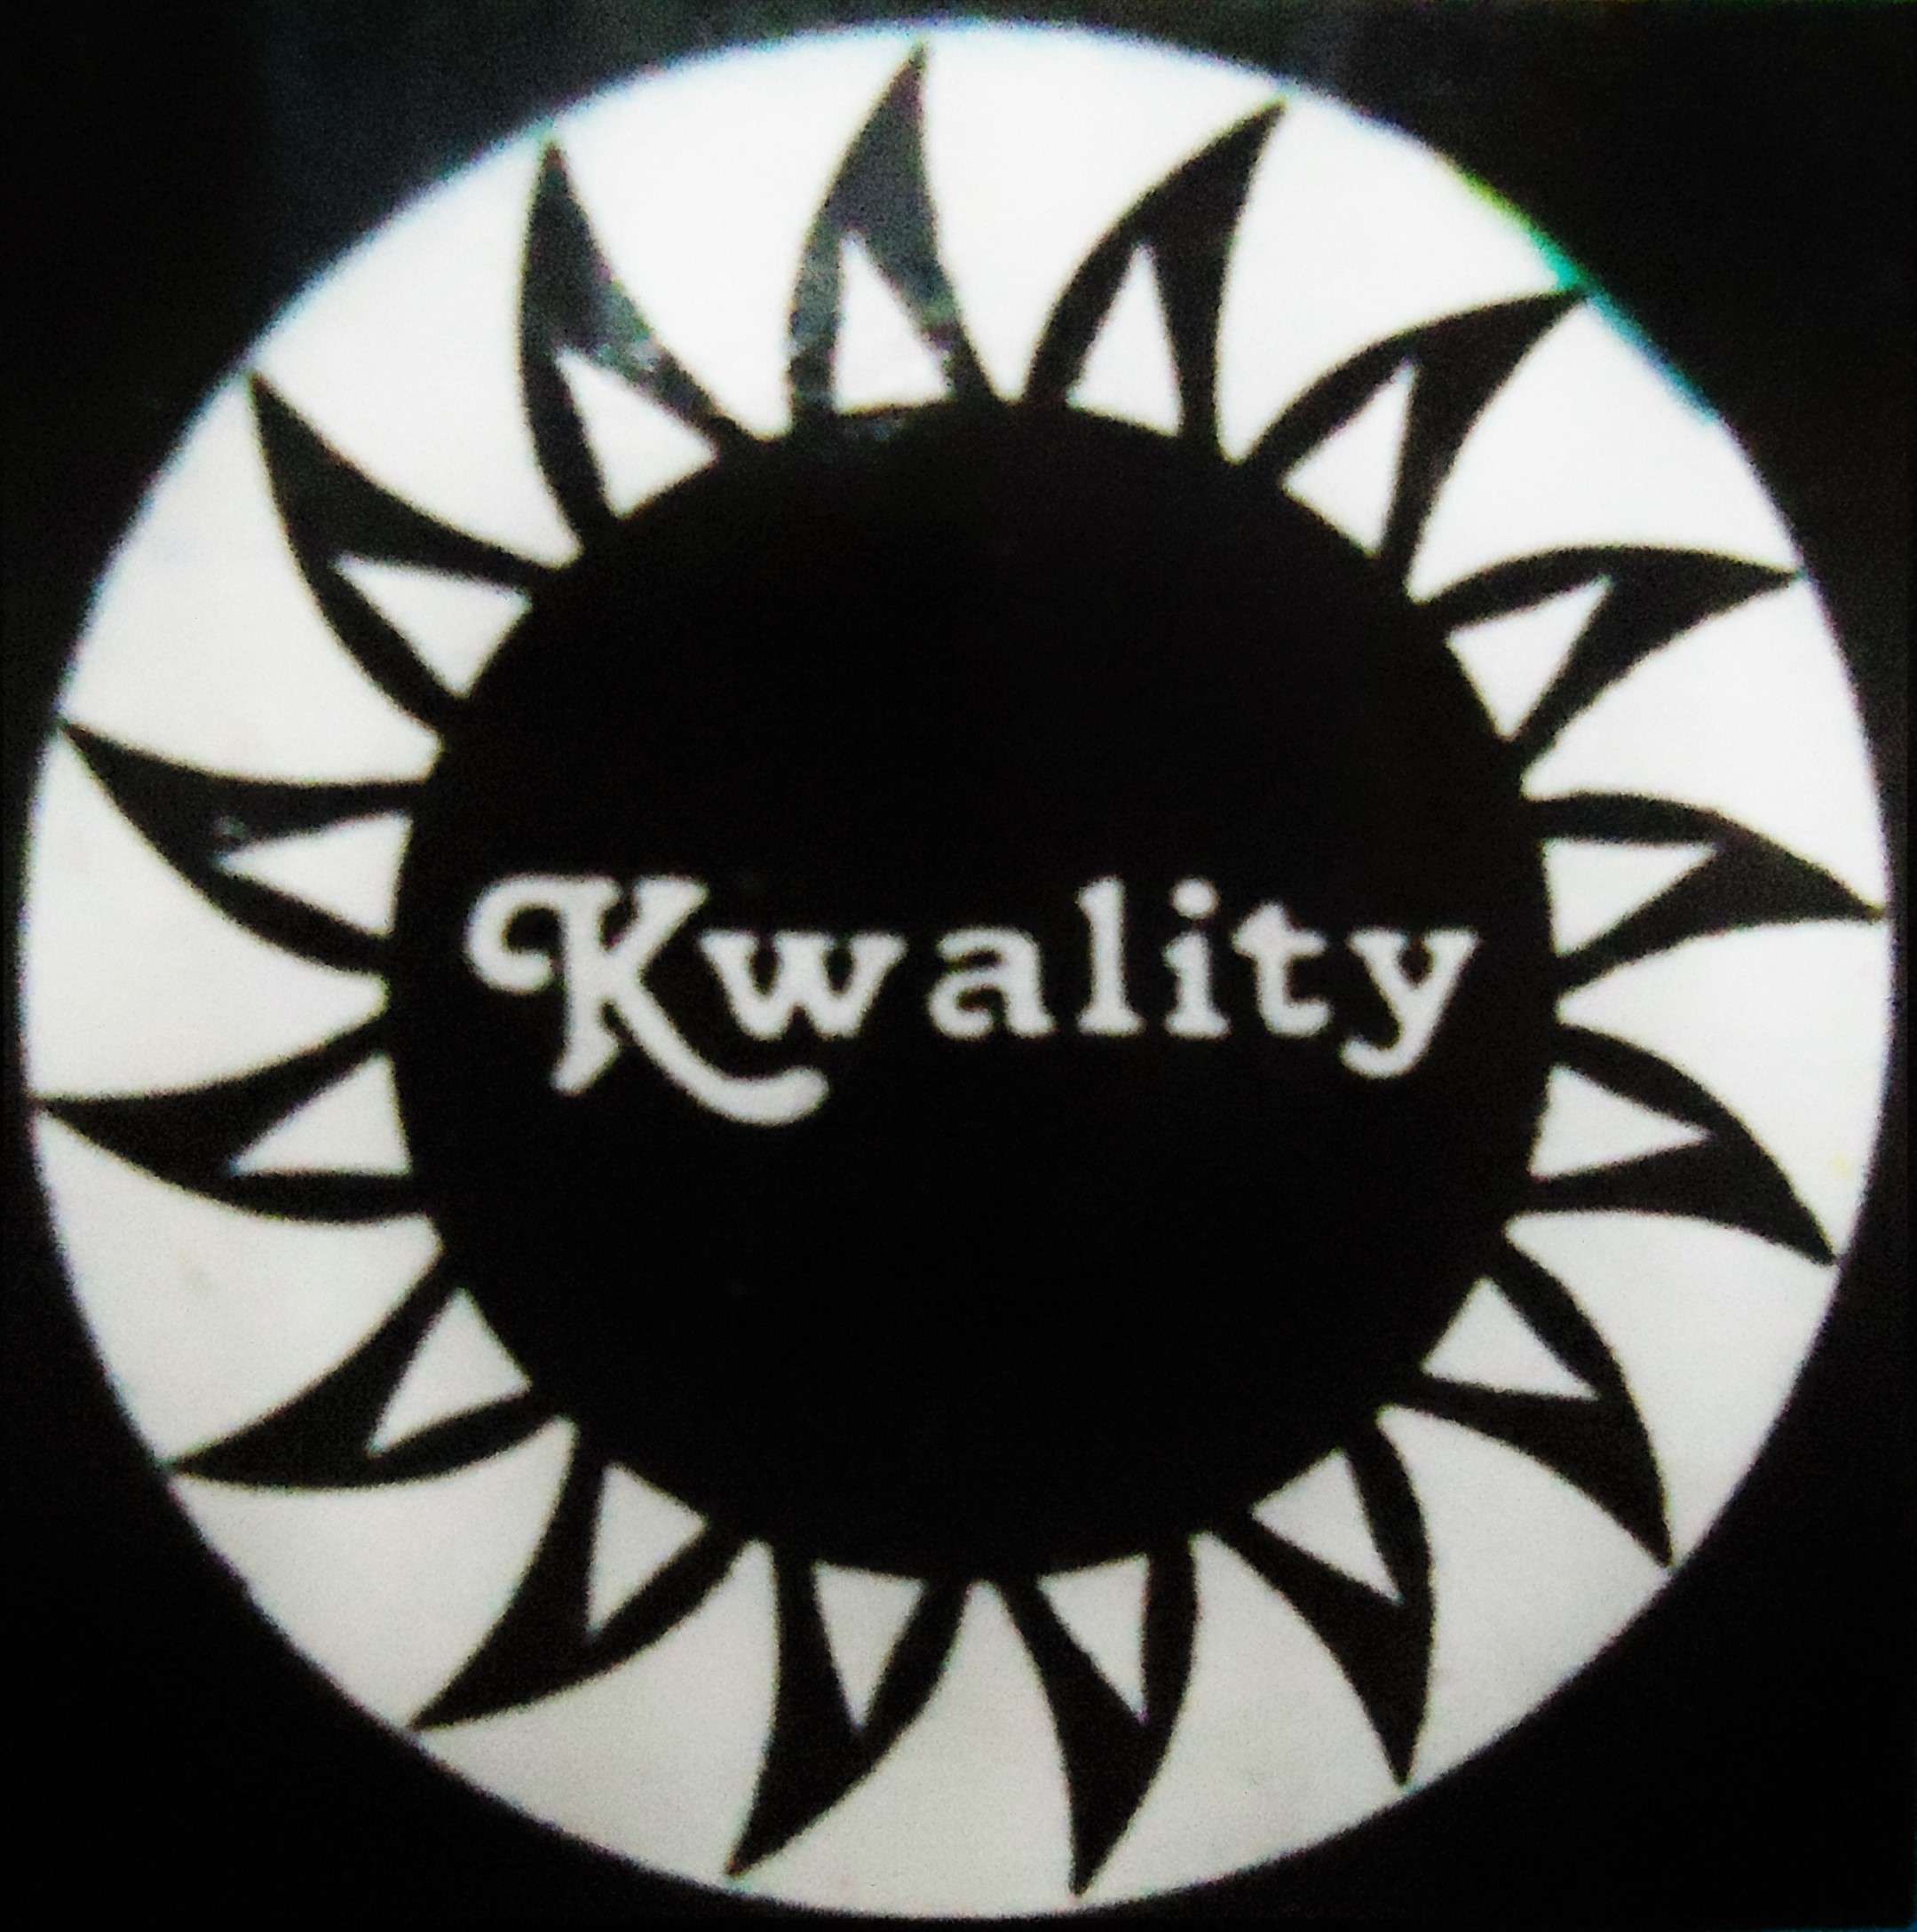 Kwality Metal Industry